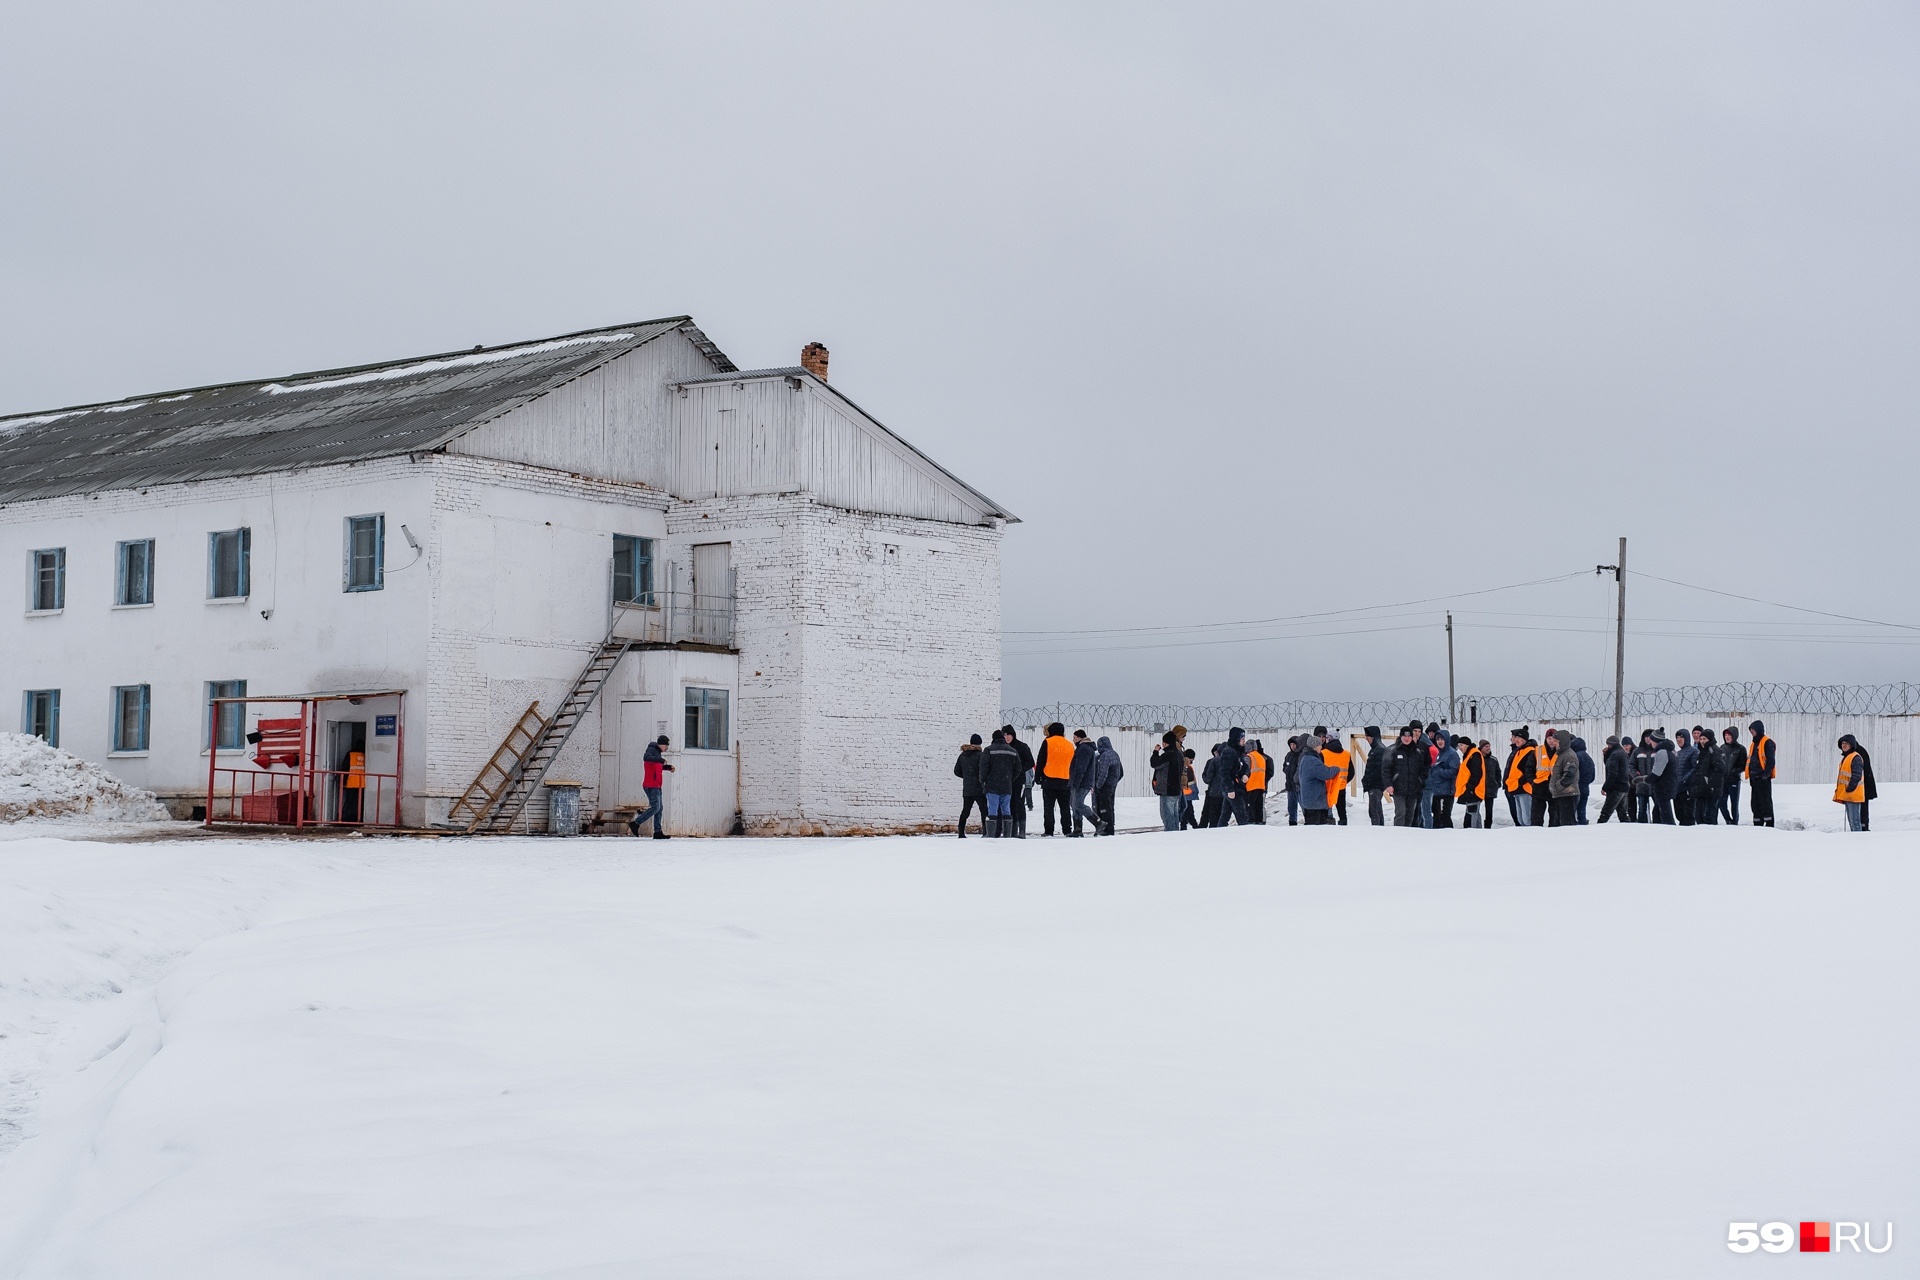 Эту фотографию мы сделали в одной из колоний-поселений Пермского края: заключенные стоят на территории, могут перемещаться между корпусами